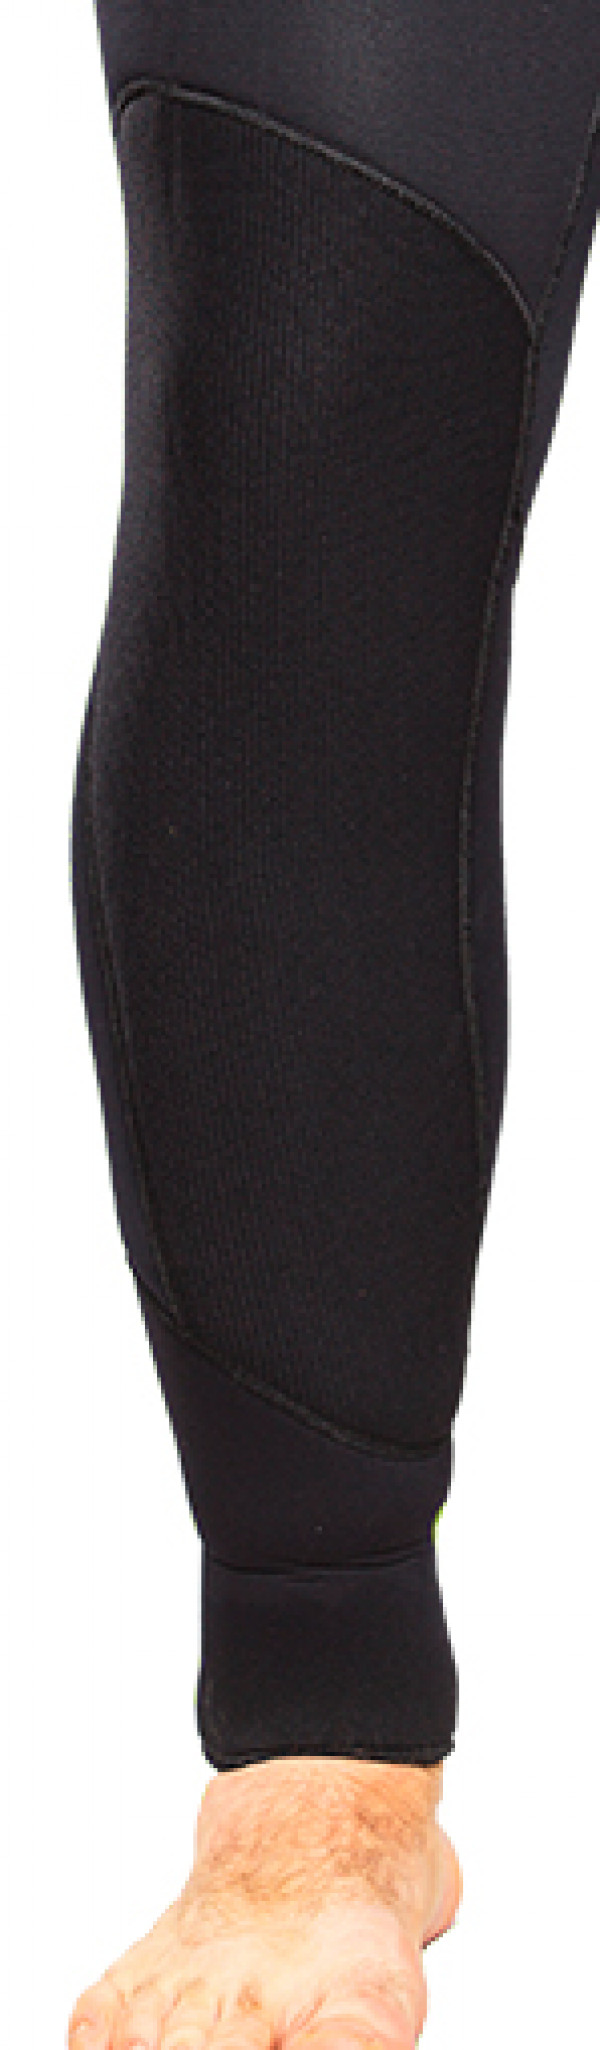 Материал «duratex» (дюратекс) защищает колени и локти костюма от преждевременного истирания